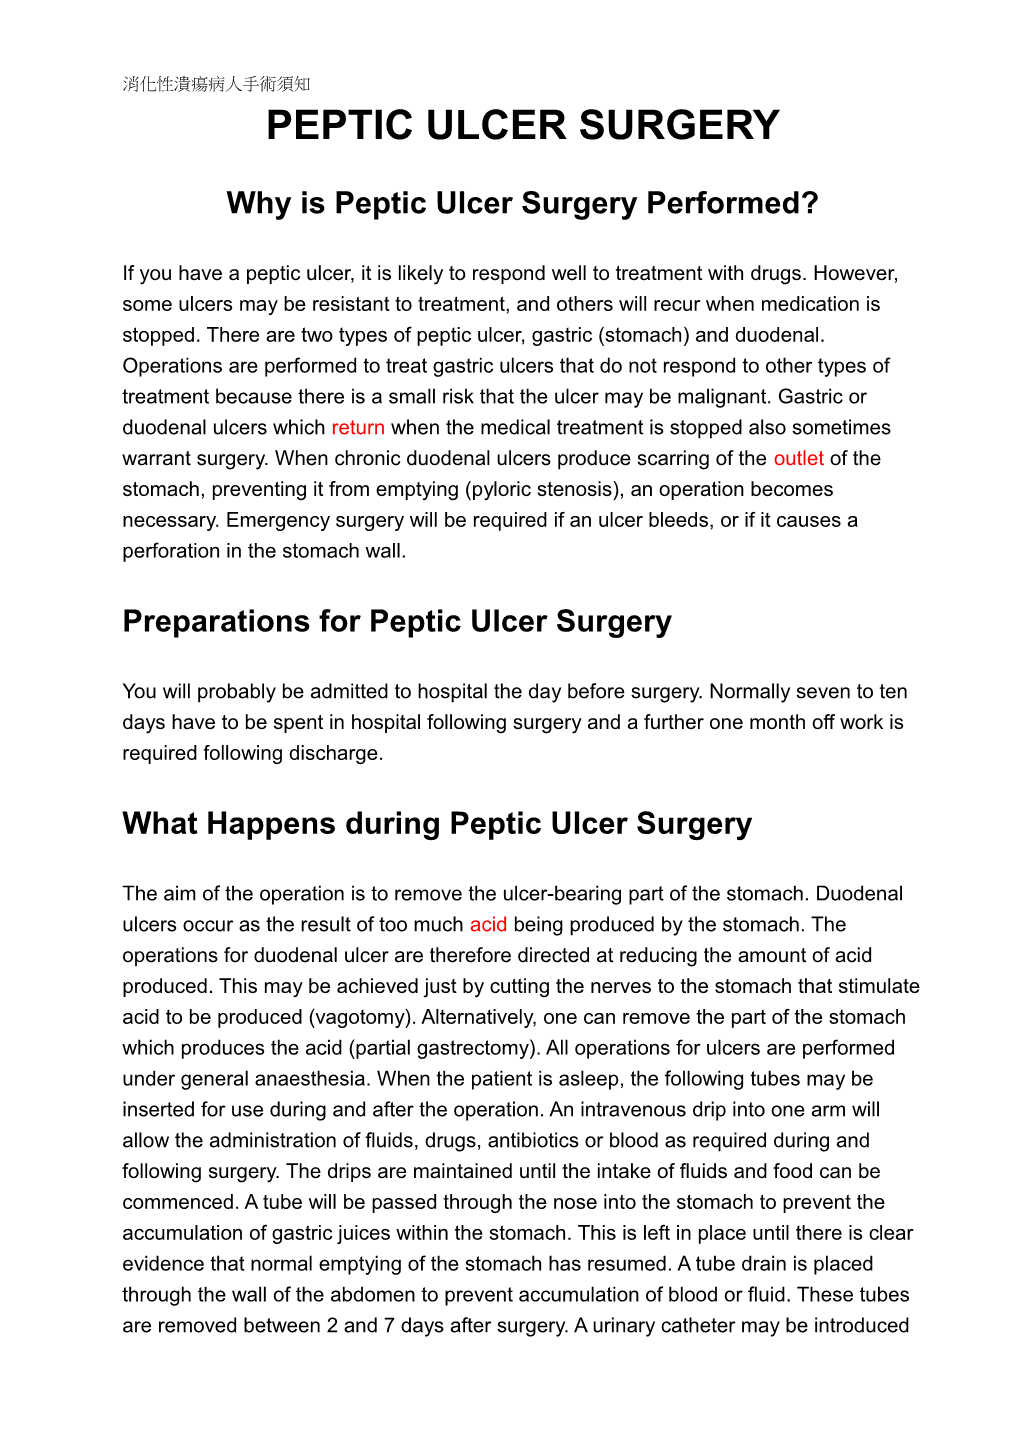 Peptic Ulcer Surgery